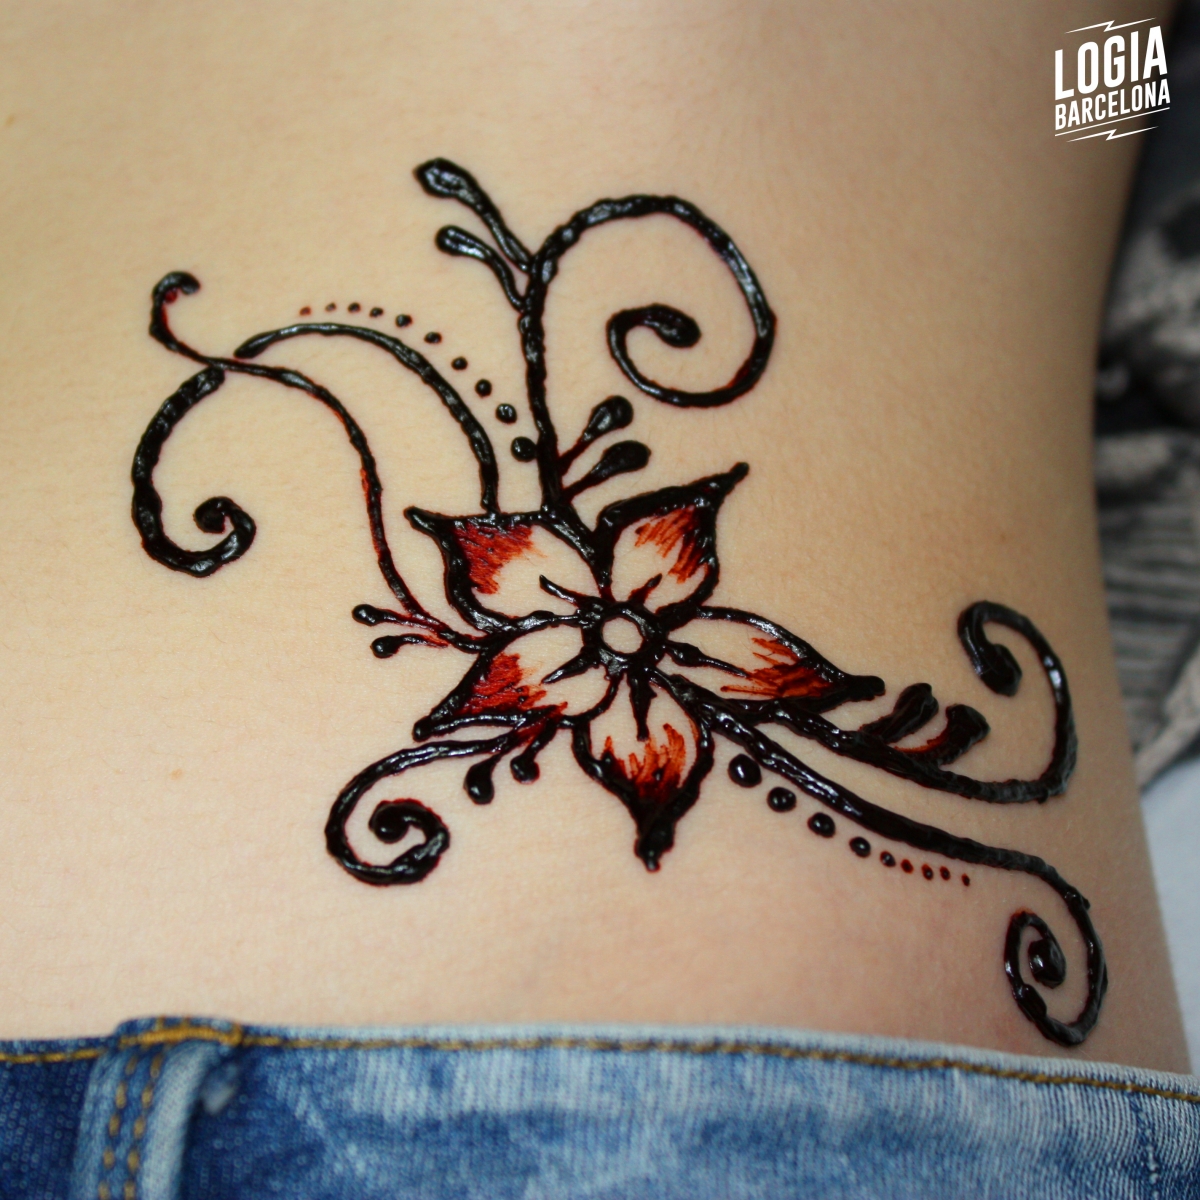 Diagnosticar Blanco El extraño Tatuajes de Henna en Barcelona - Tienda Tatuaje con Henna Barcelona